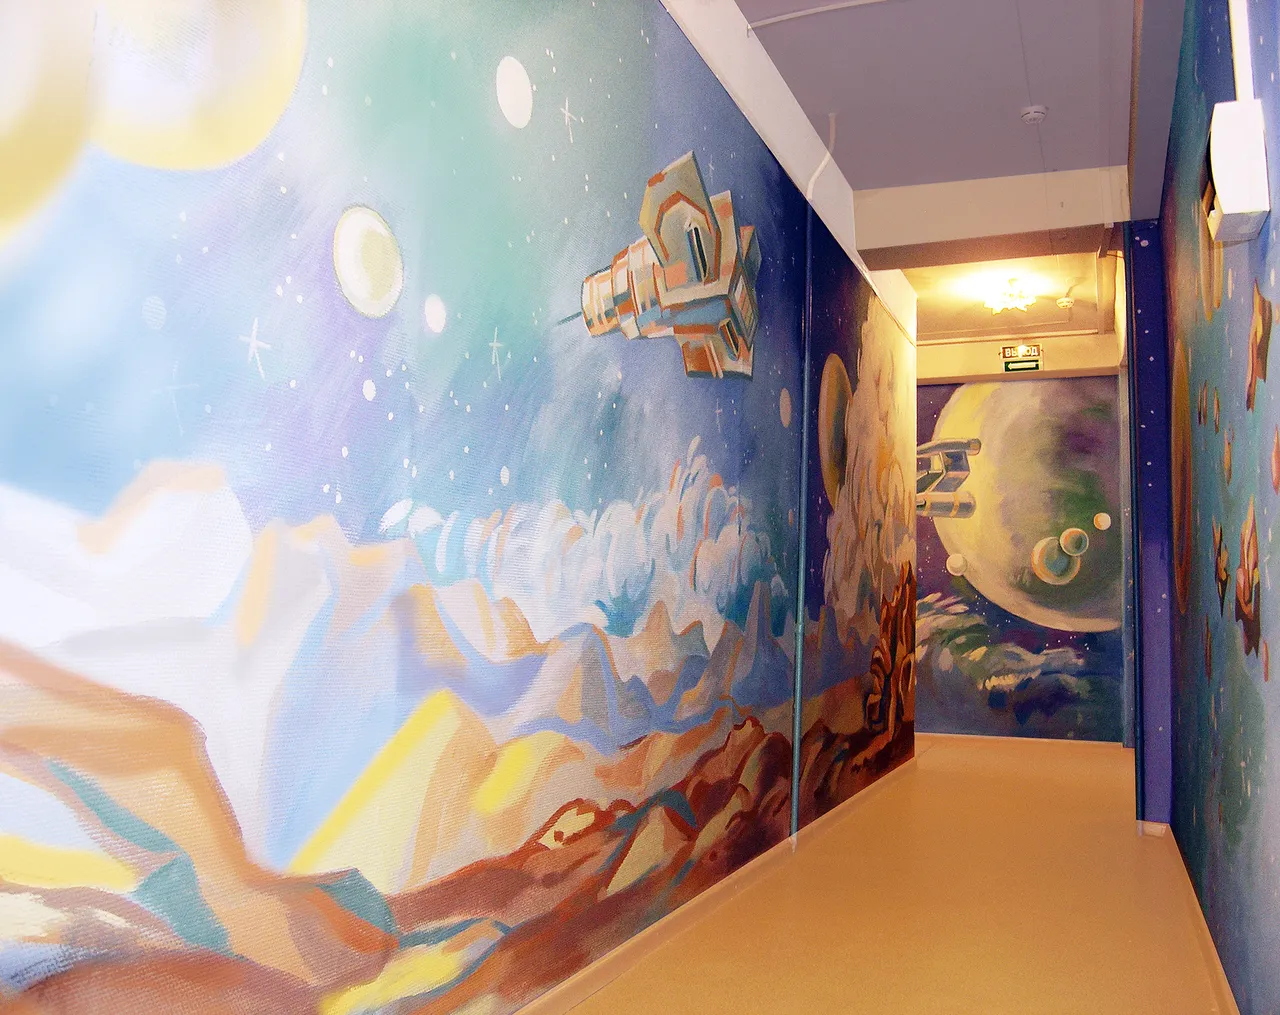 Tranh vẽ tường chủ đề du hành không gian đầy ấn tượng